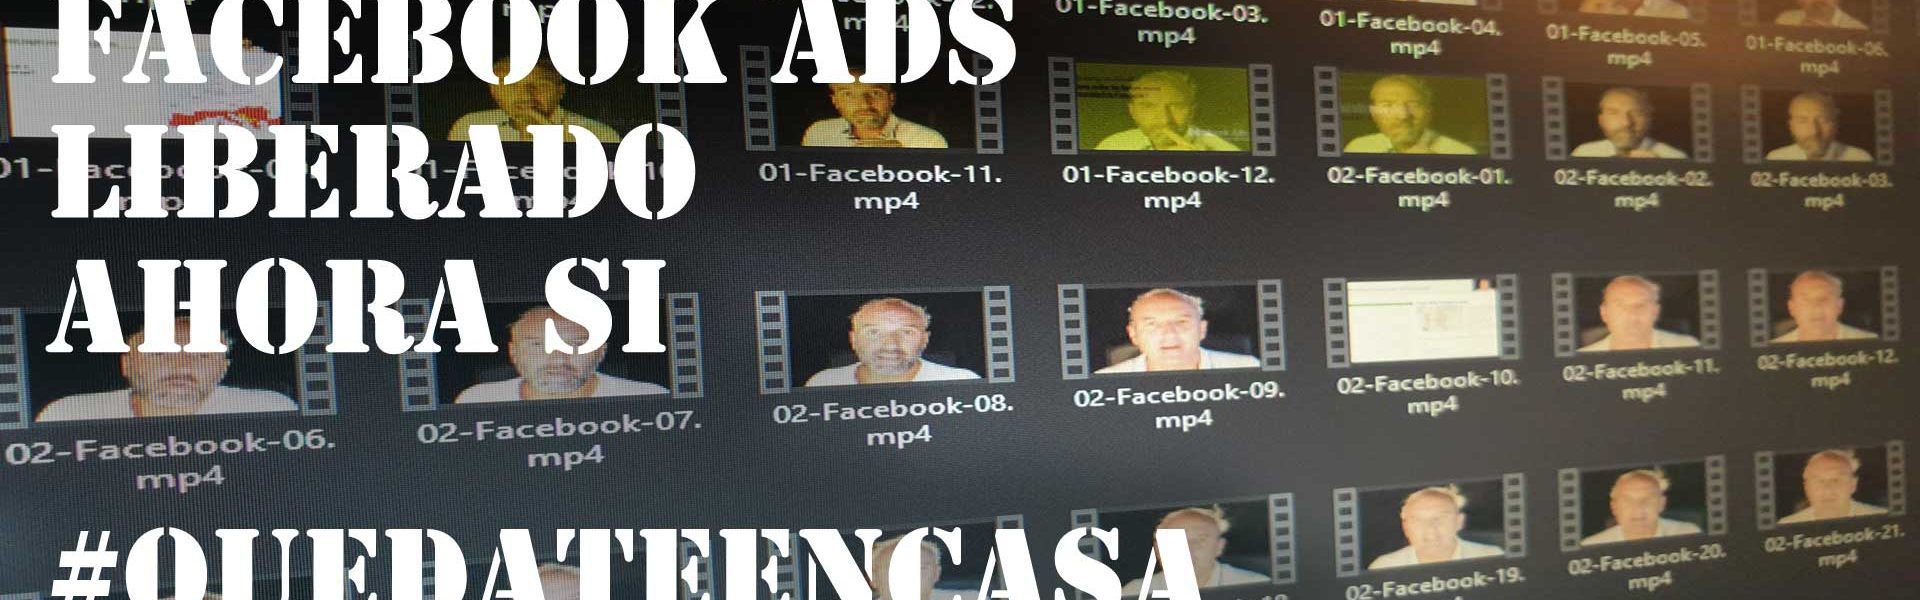 #QuedateEnCasa I : Liberando vídeos de Facebook Ads